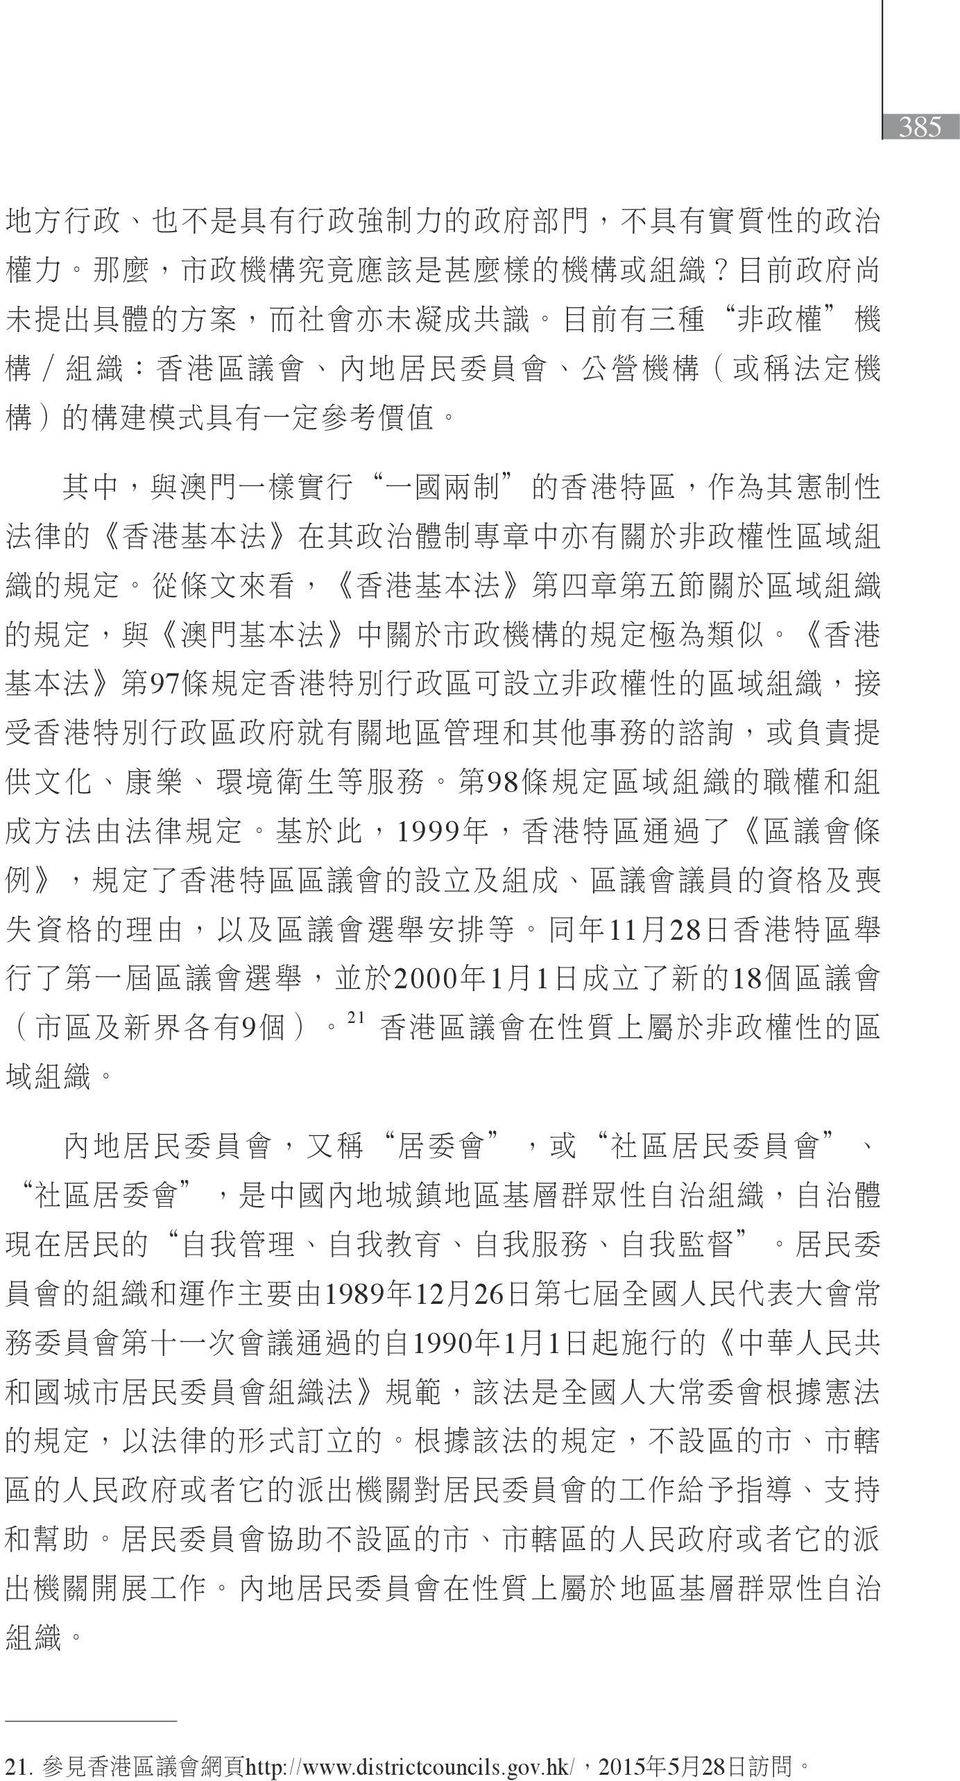 律 的 香 港 基 本 法 在 其 政 治 體 制 專 章 中 亦 有 關 於 非 政 權 性 區 域 組 織 的 規 定 從 條 文 來 看, 香 港 基 本 法 第 四 章 第 五 節 關 於 區 域 組 織 的 規 定, 與 澳 門 基 本 法 中 關 於 市 政 機 構 的 規 定 極 為 類 似 香 港 基 本 法 第 97 條 規 定 香 港 特 別 行 政 區 可 設 立 非 政